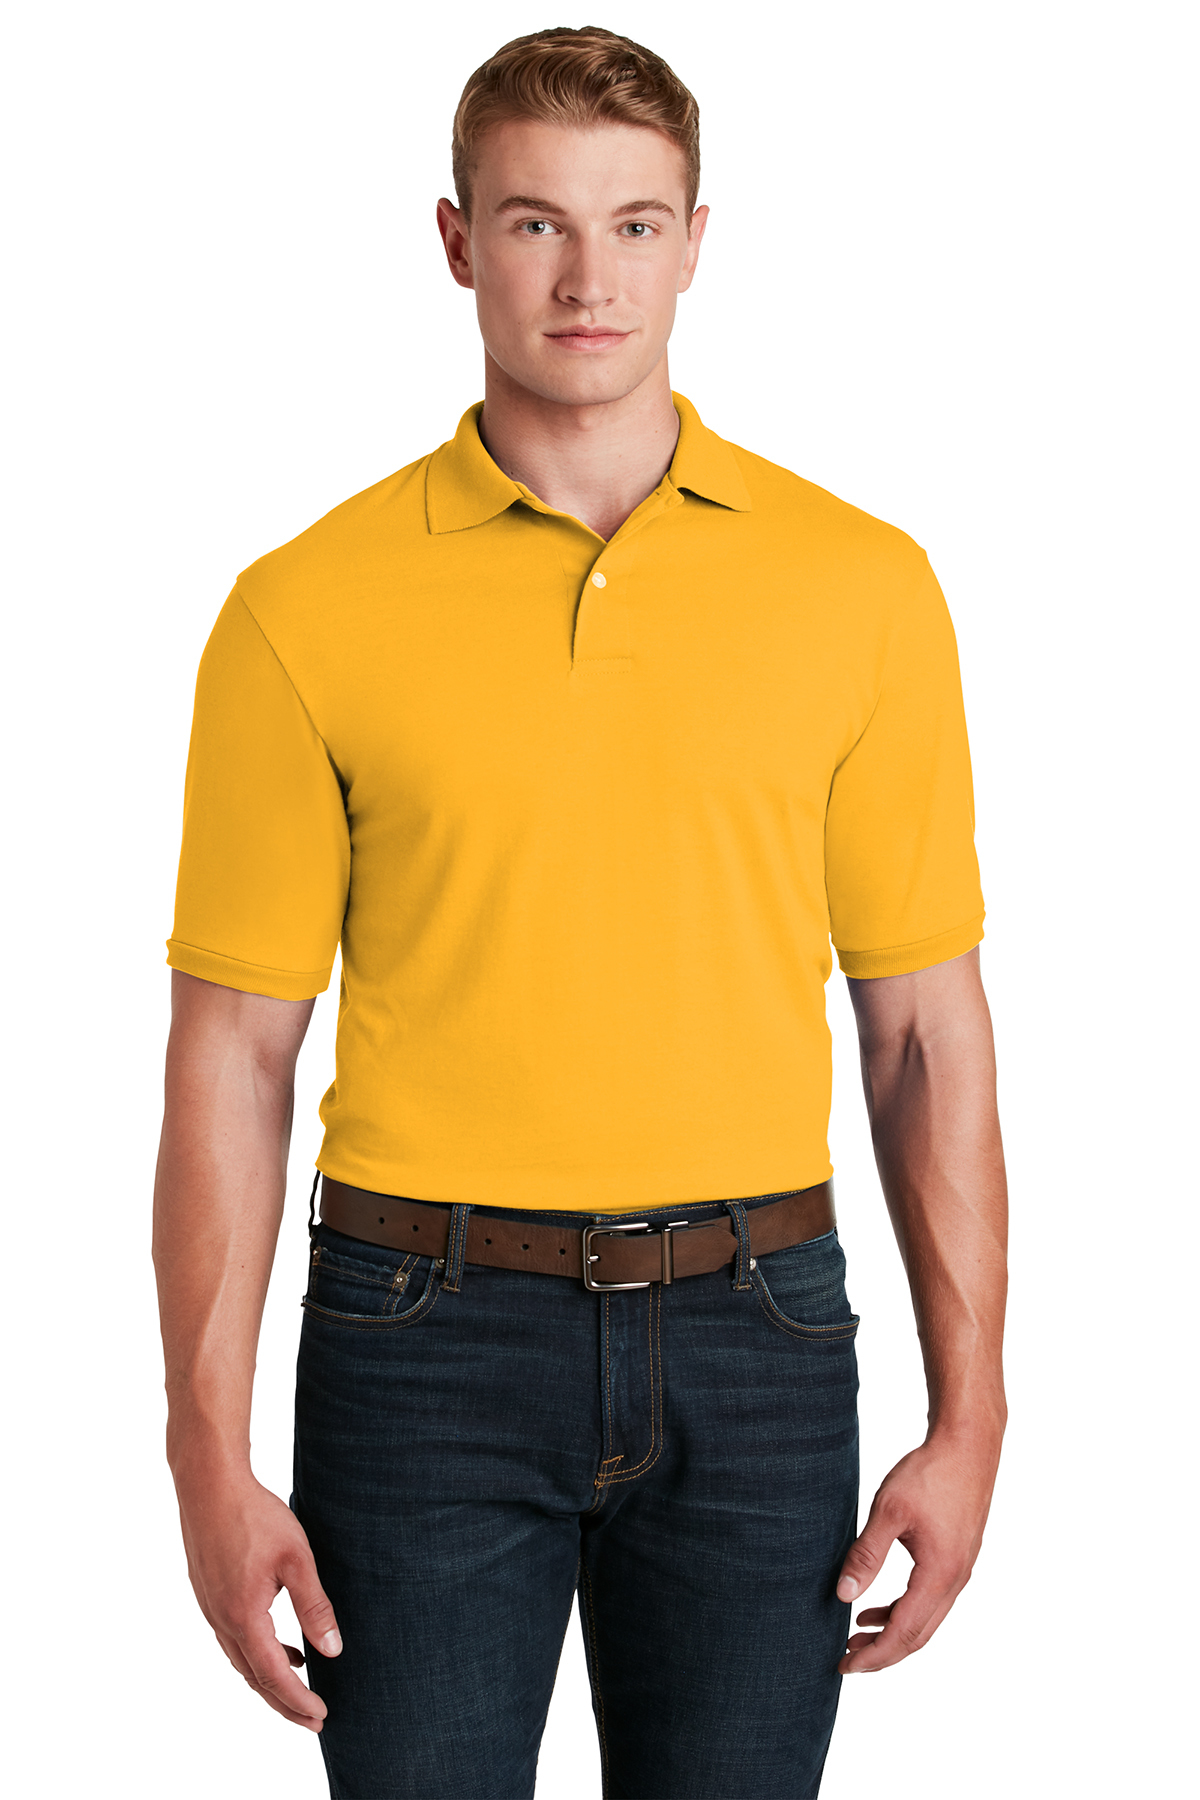 DOLOMITE Dolomite 269574 - Camiseta hombre spice yellow - Private